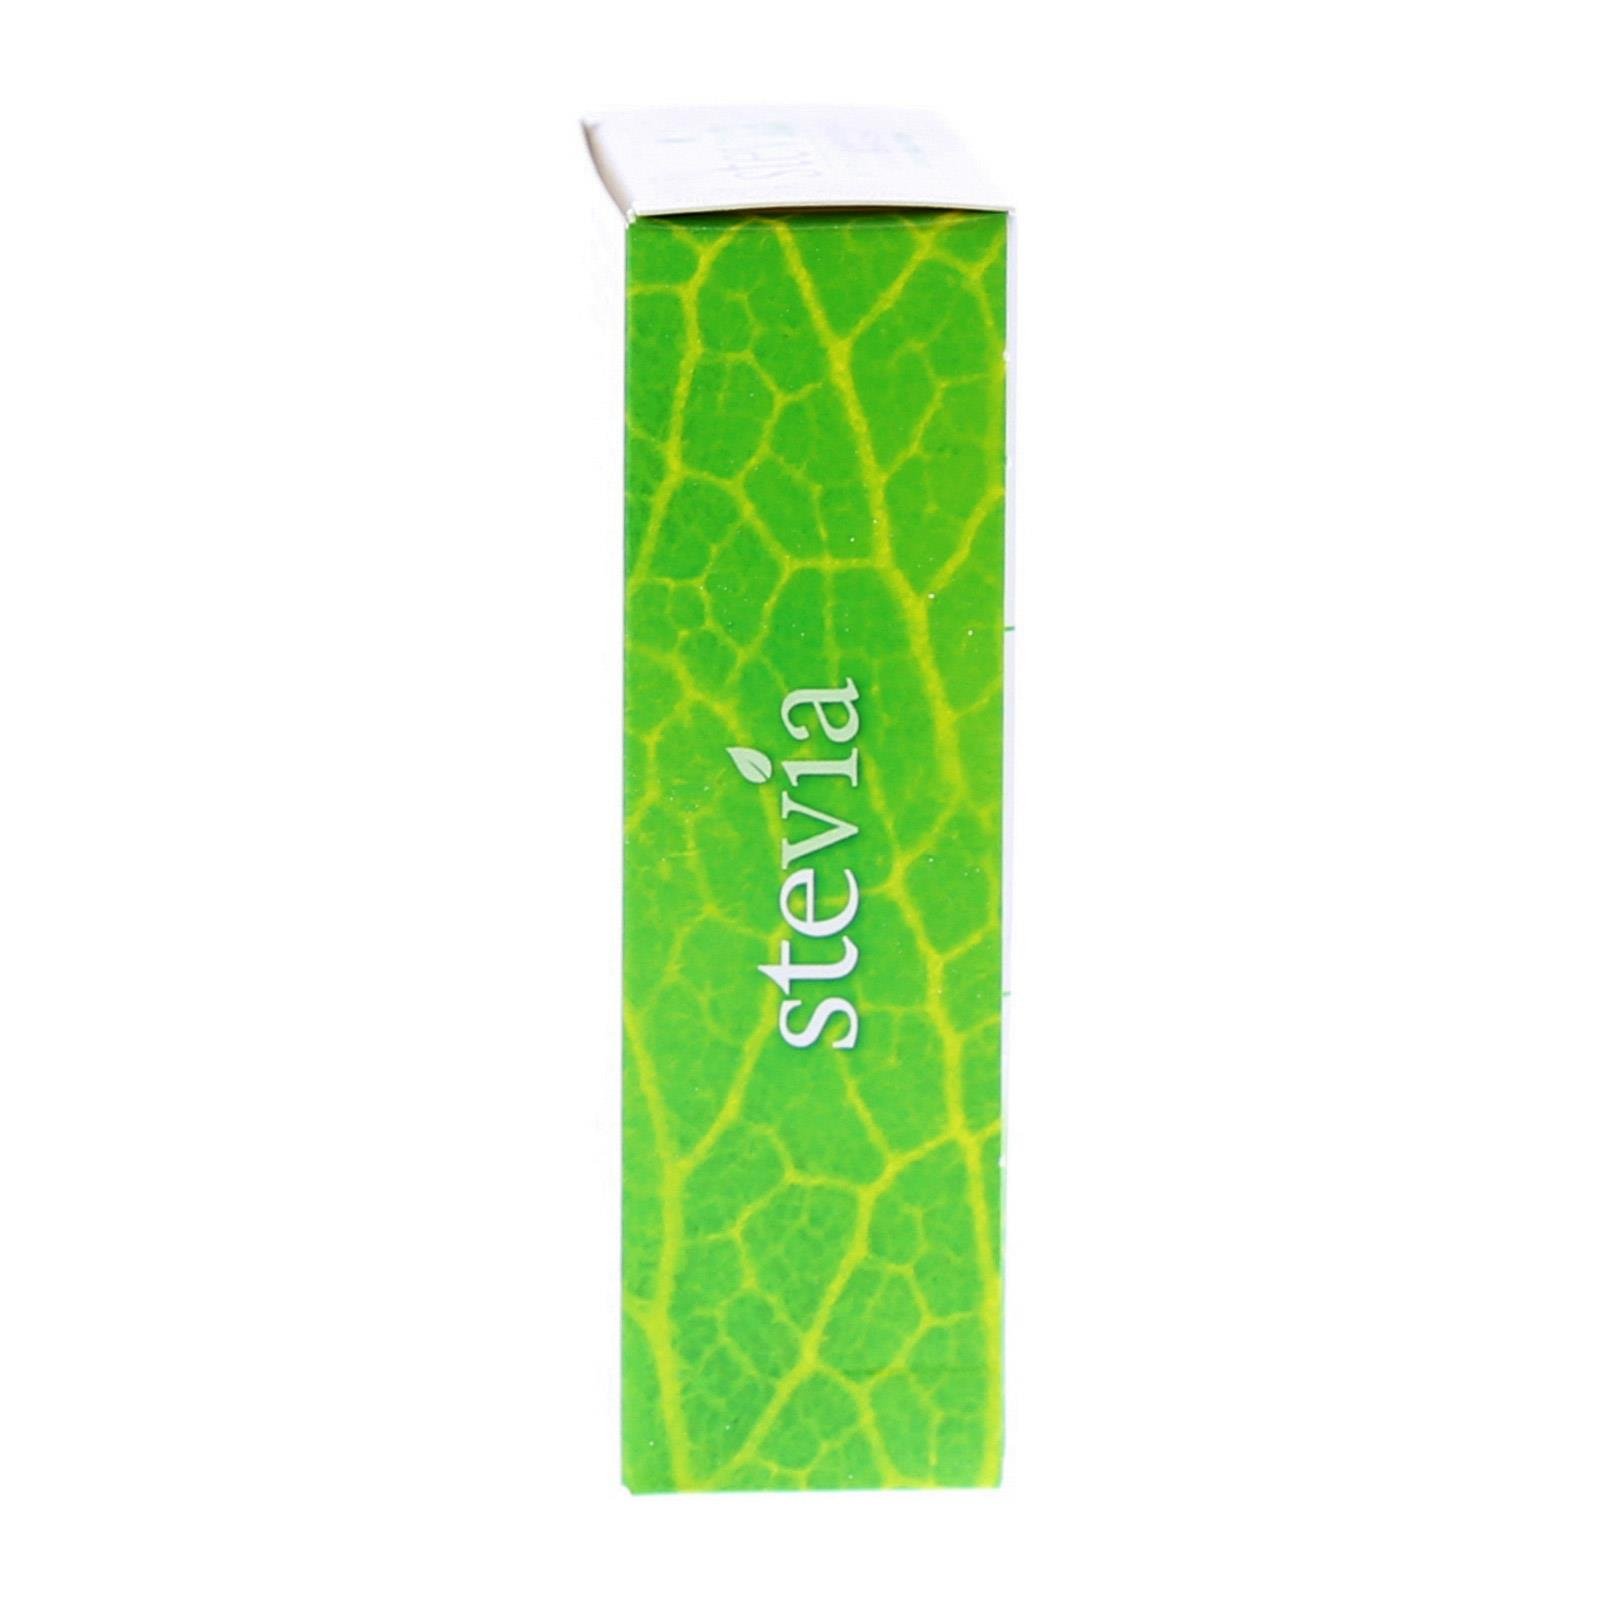 KANDISIN Stevia - Comprimés, 14 g - Boutique en ligne From Austria